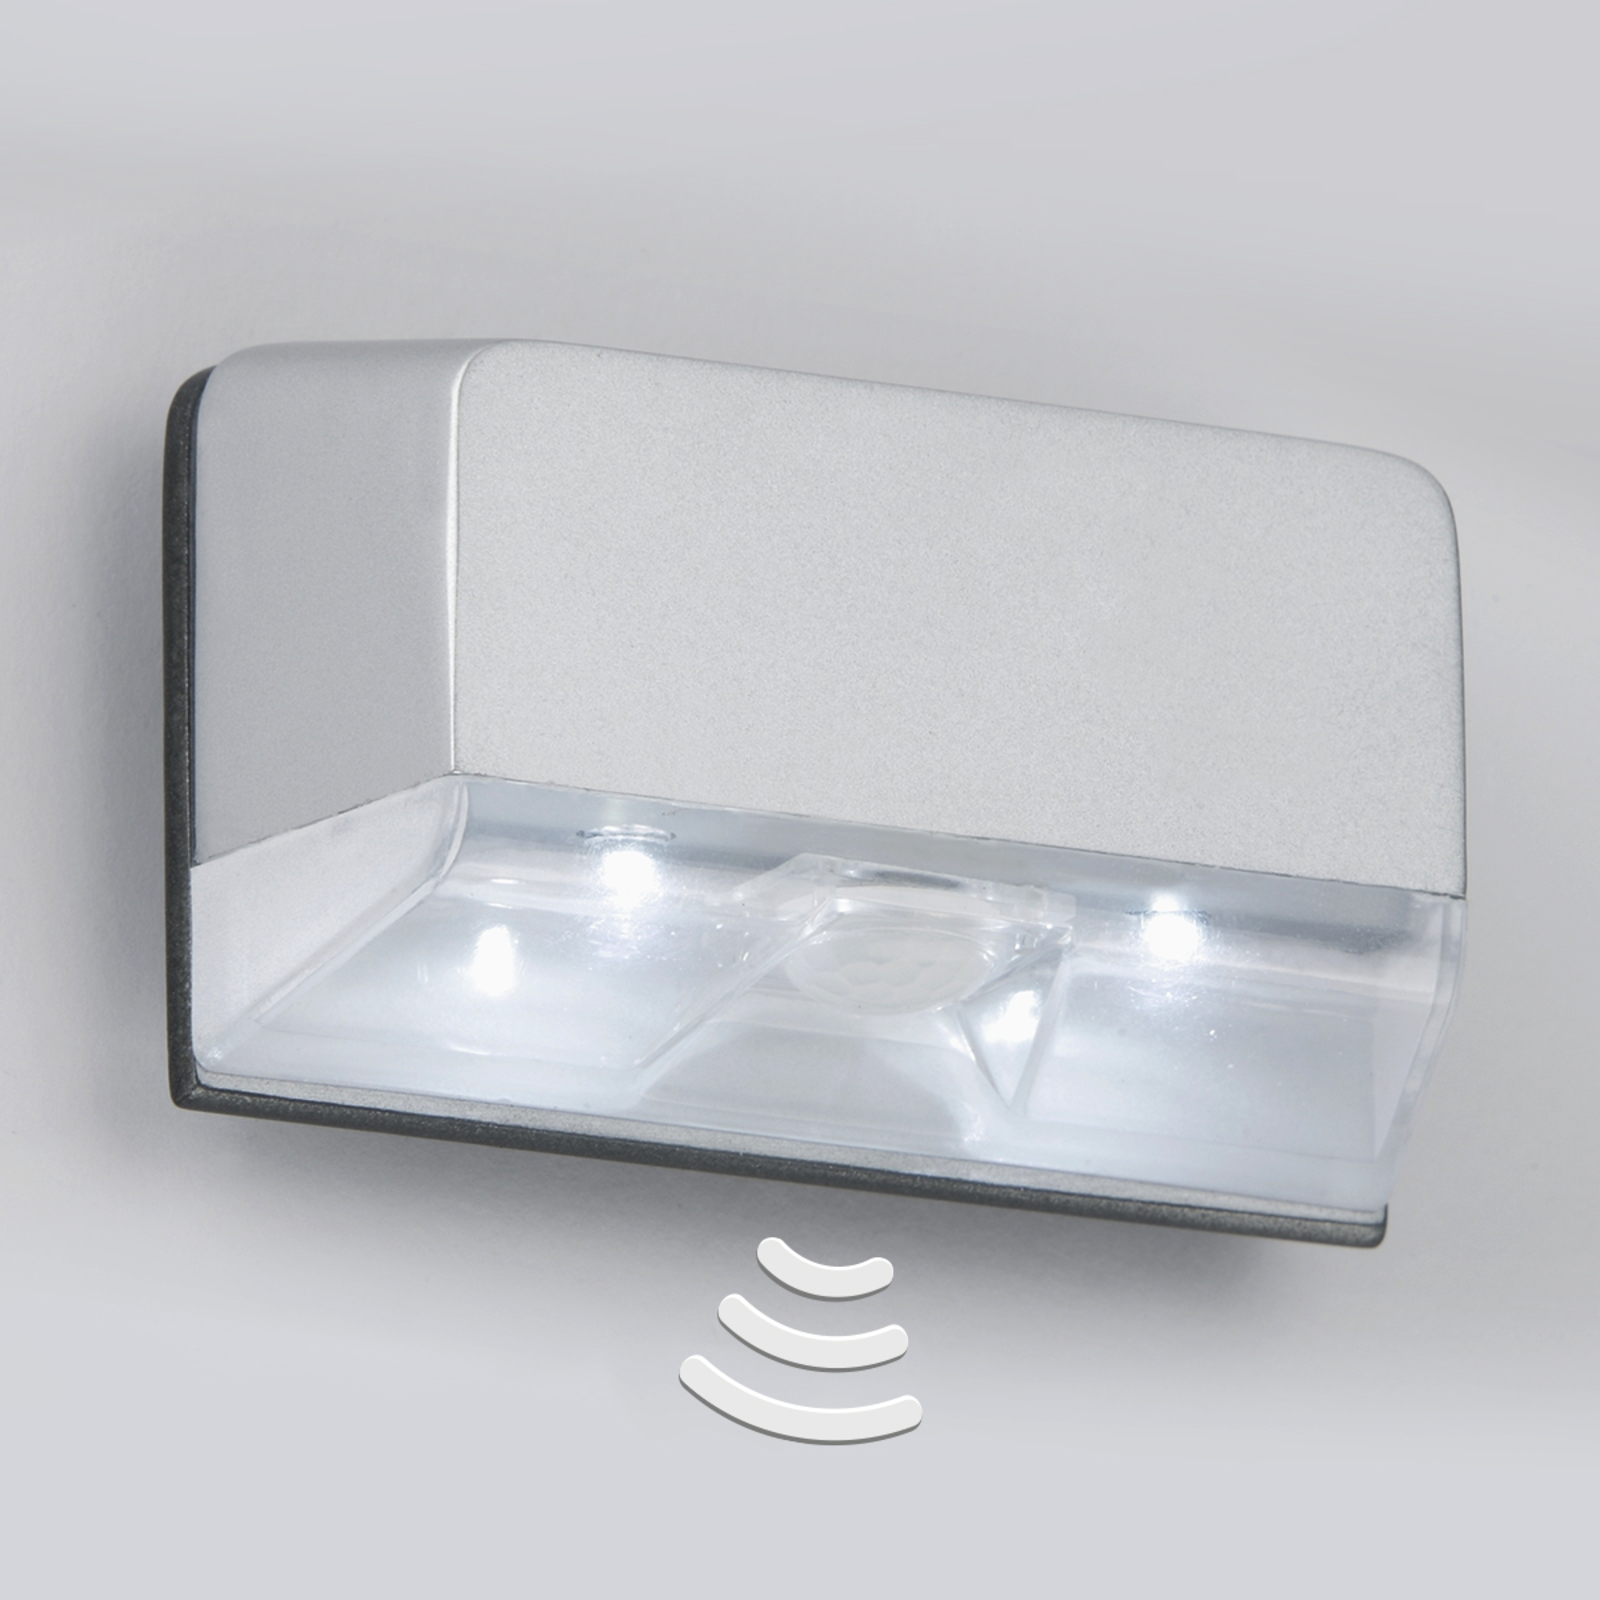 LED-lys for dørlås Lero med bevegelsessensor